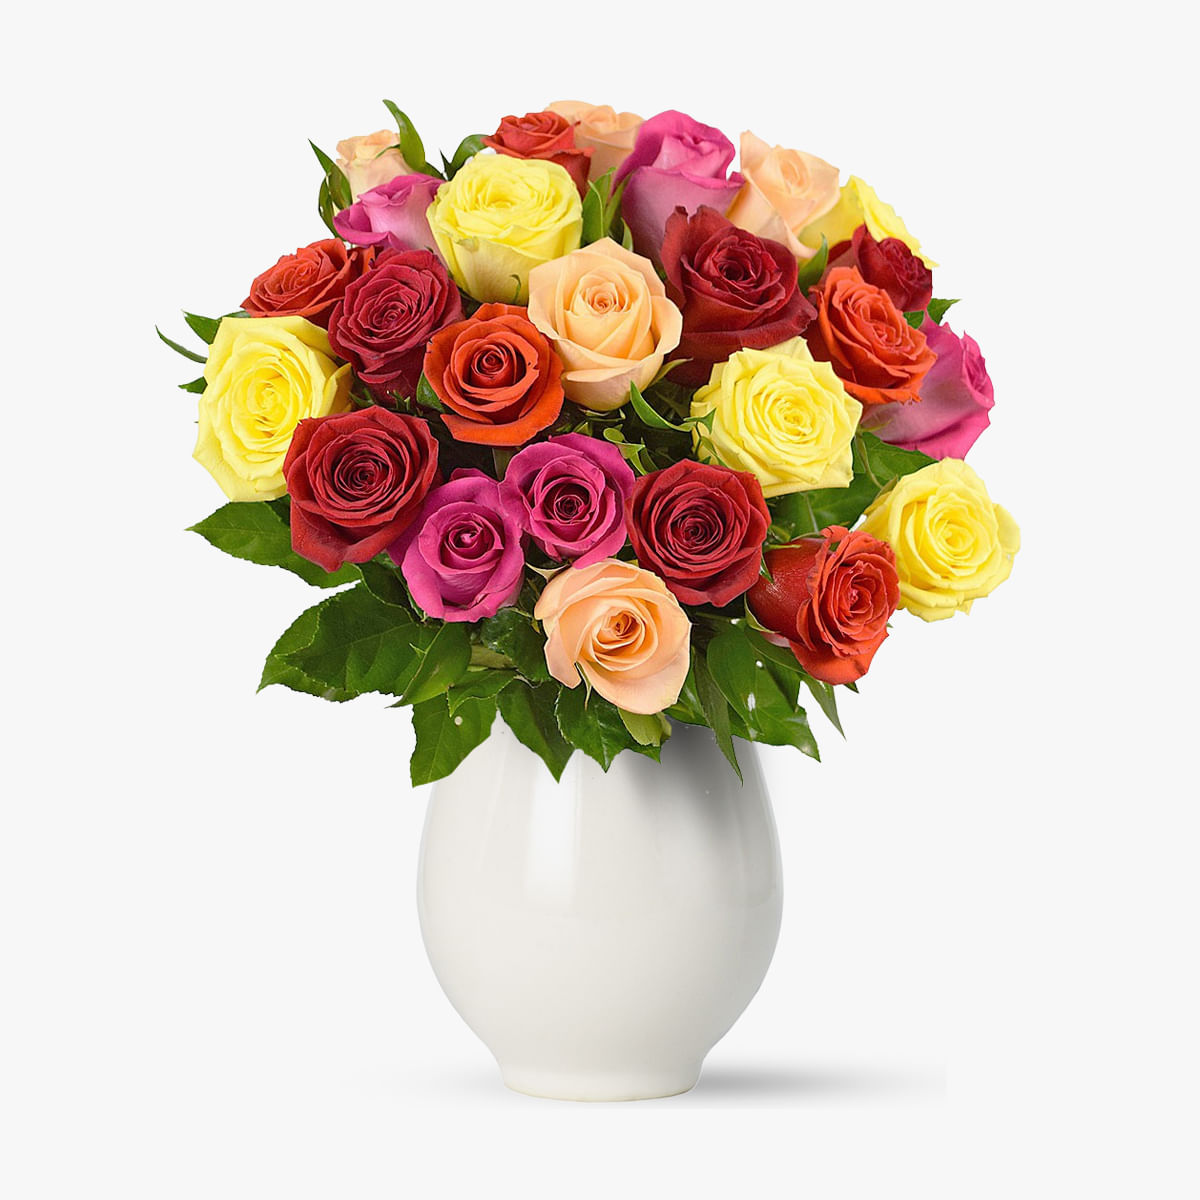 Buchet de 25 trandafiri multicolori – Standard Buchet